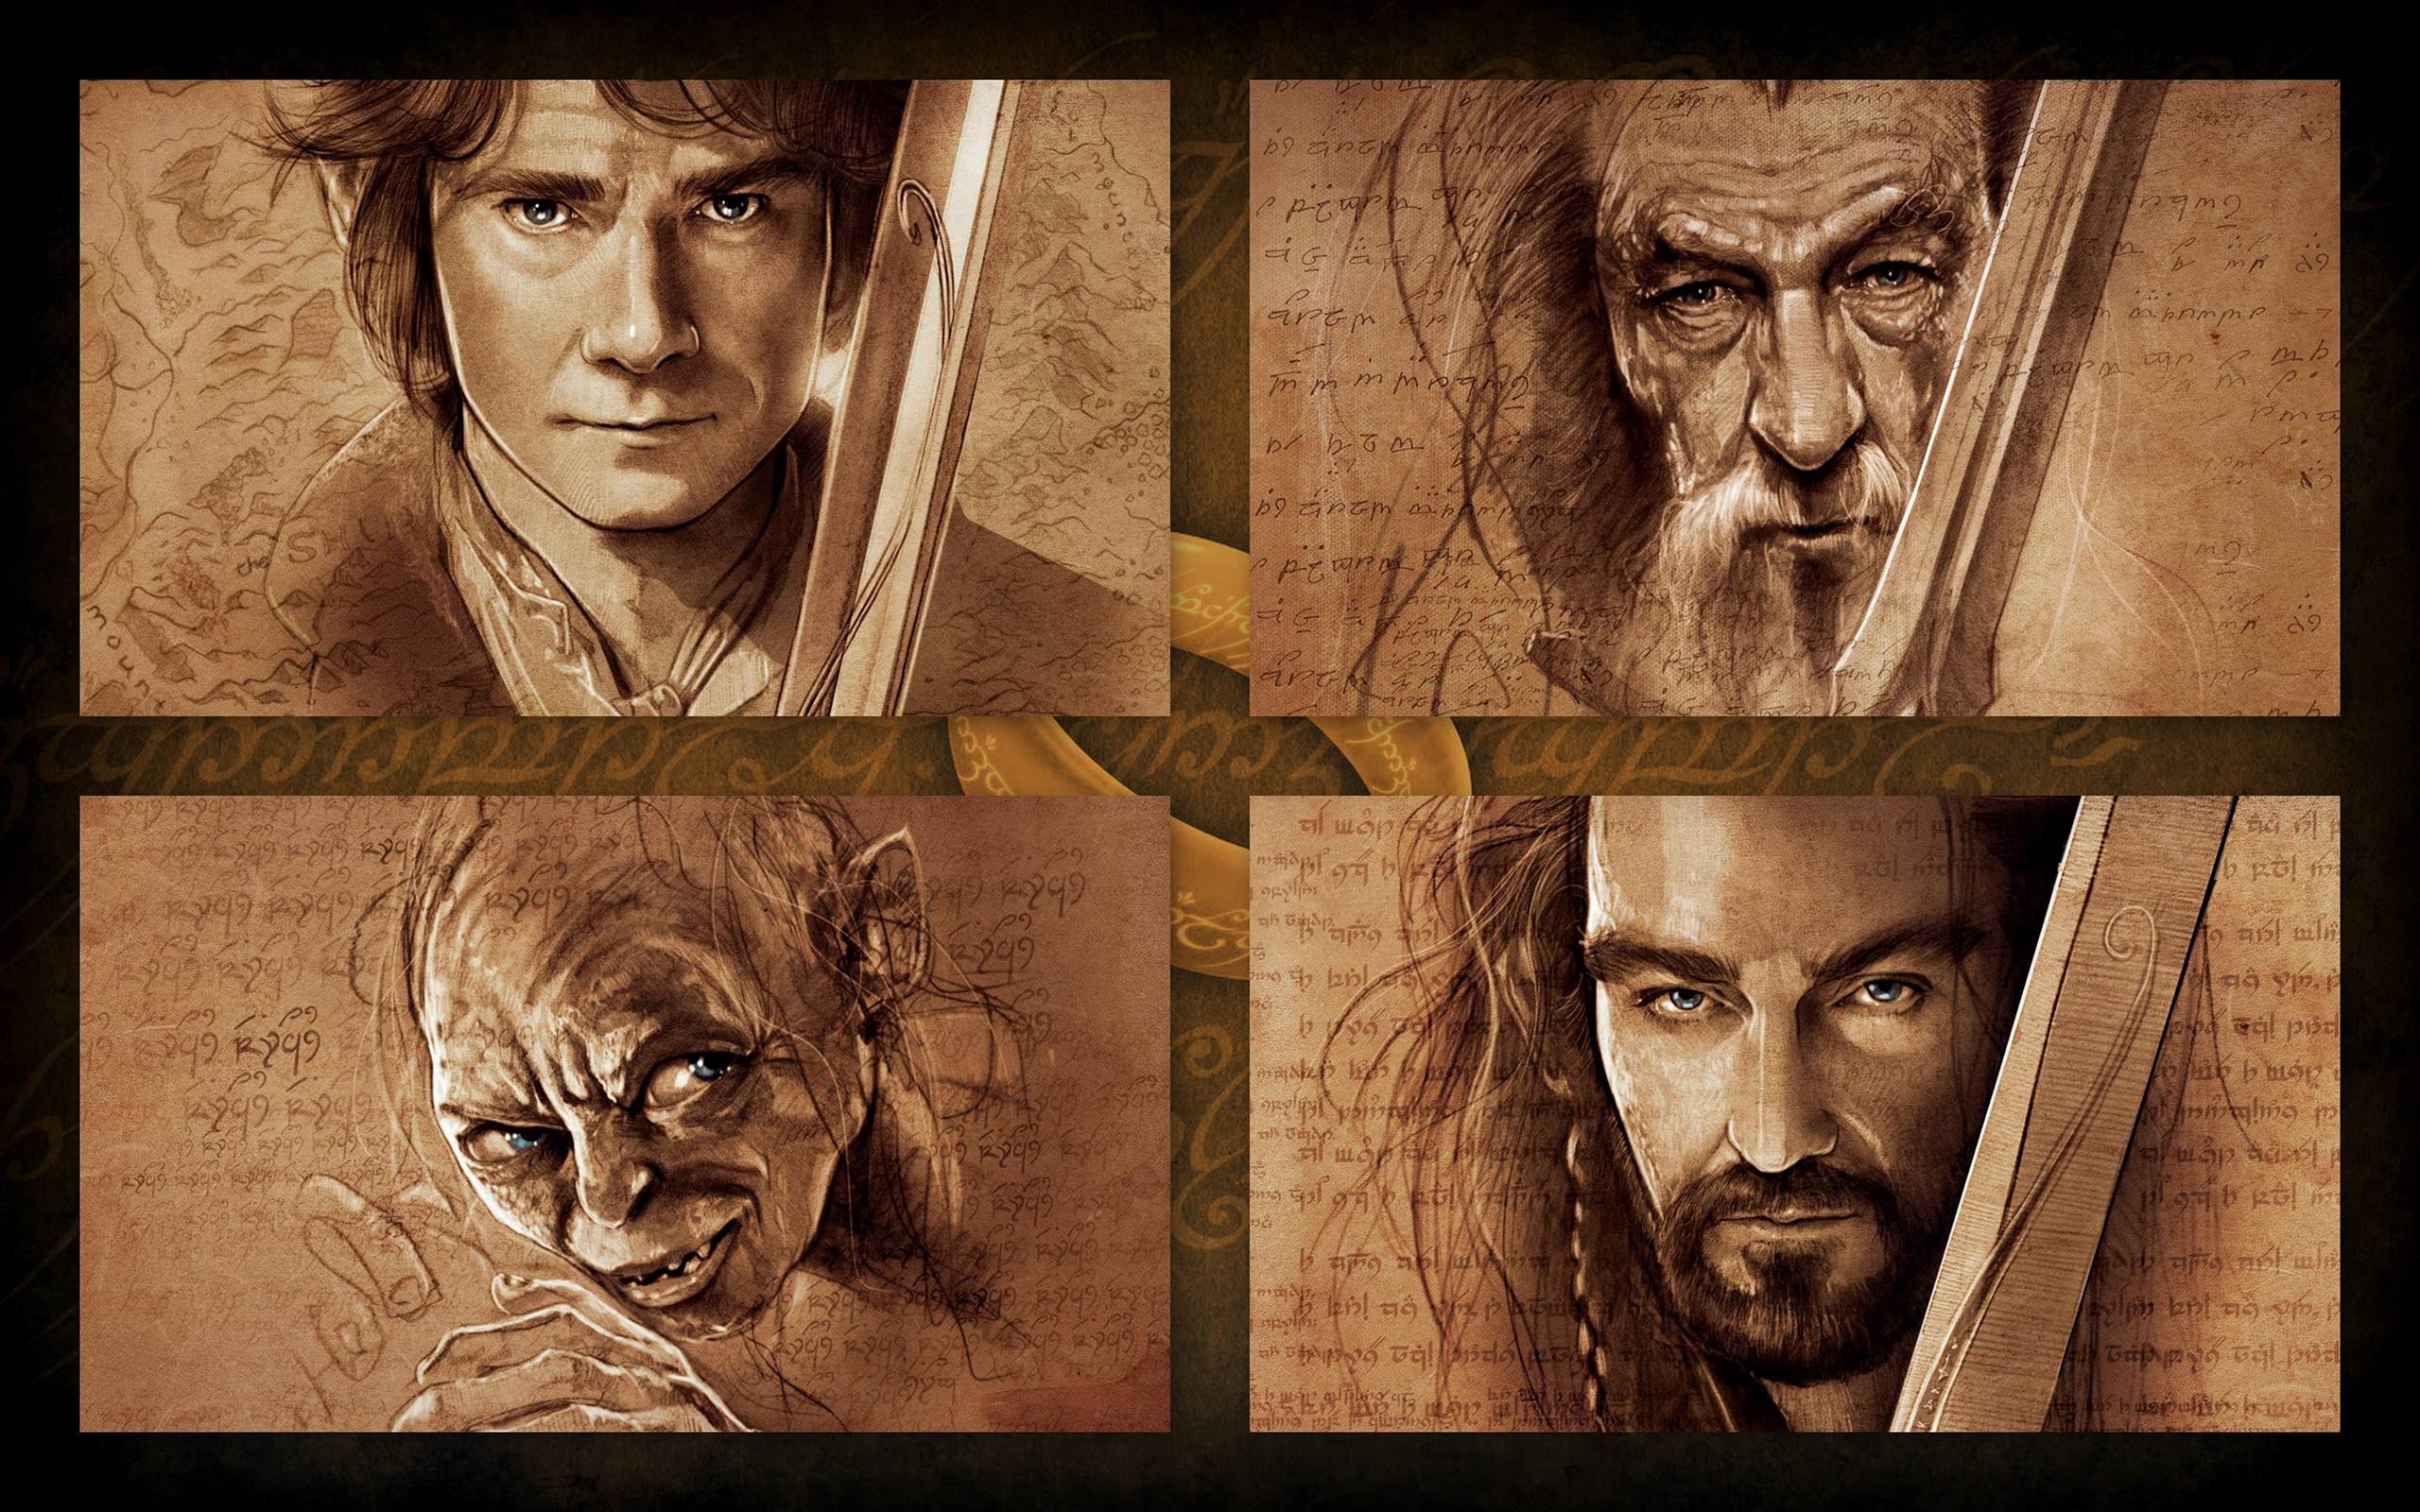 The Hobbit: An Unexpected Journey Wallpaper. The Hobbit: An